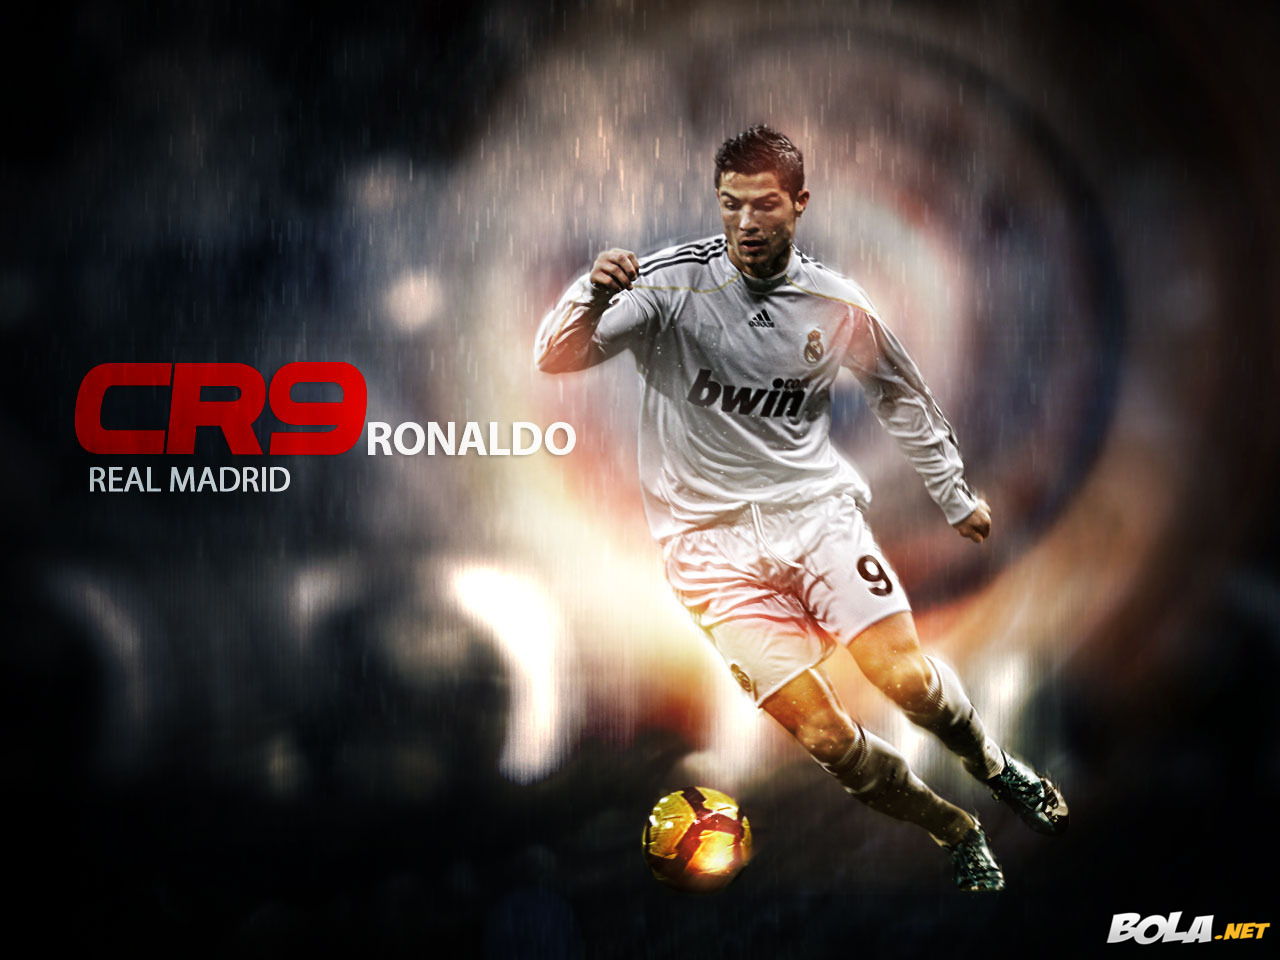 Deskripsi : Wallpaper Cristiano Ronaldo, size: 1280x960